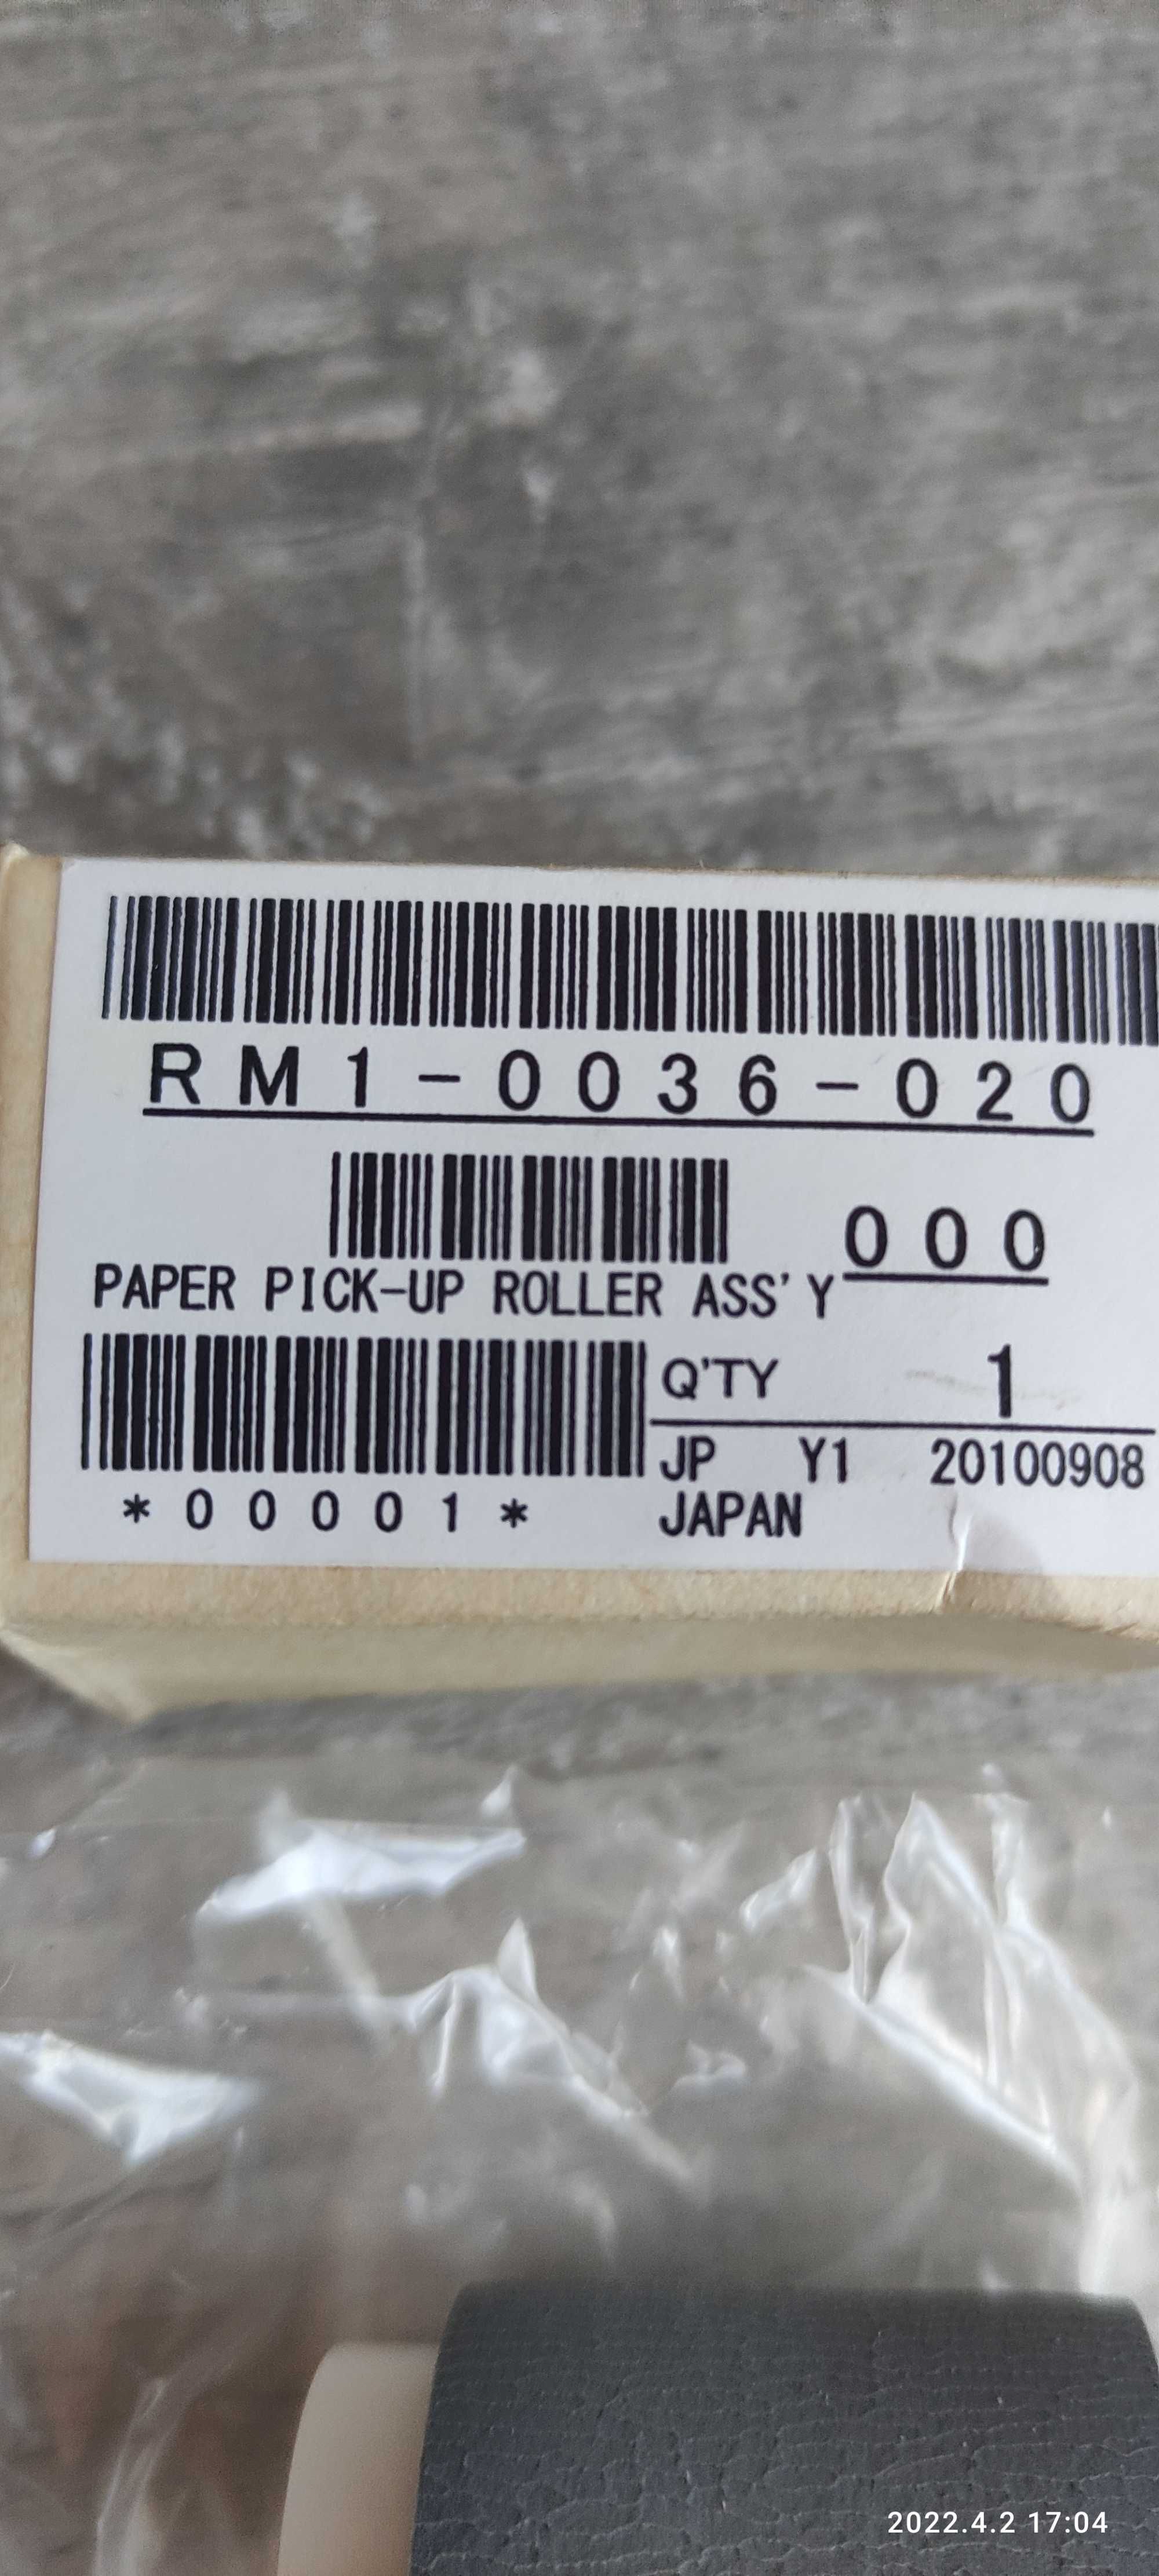 Rolka pobierająca drukarki HP RM1 -0036 -020 oryginał